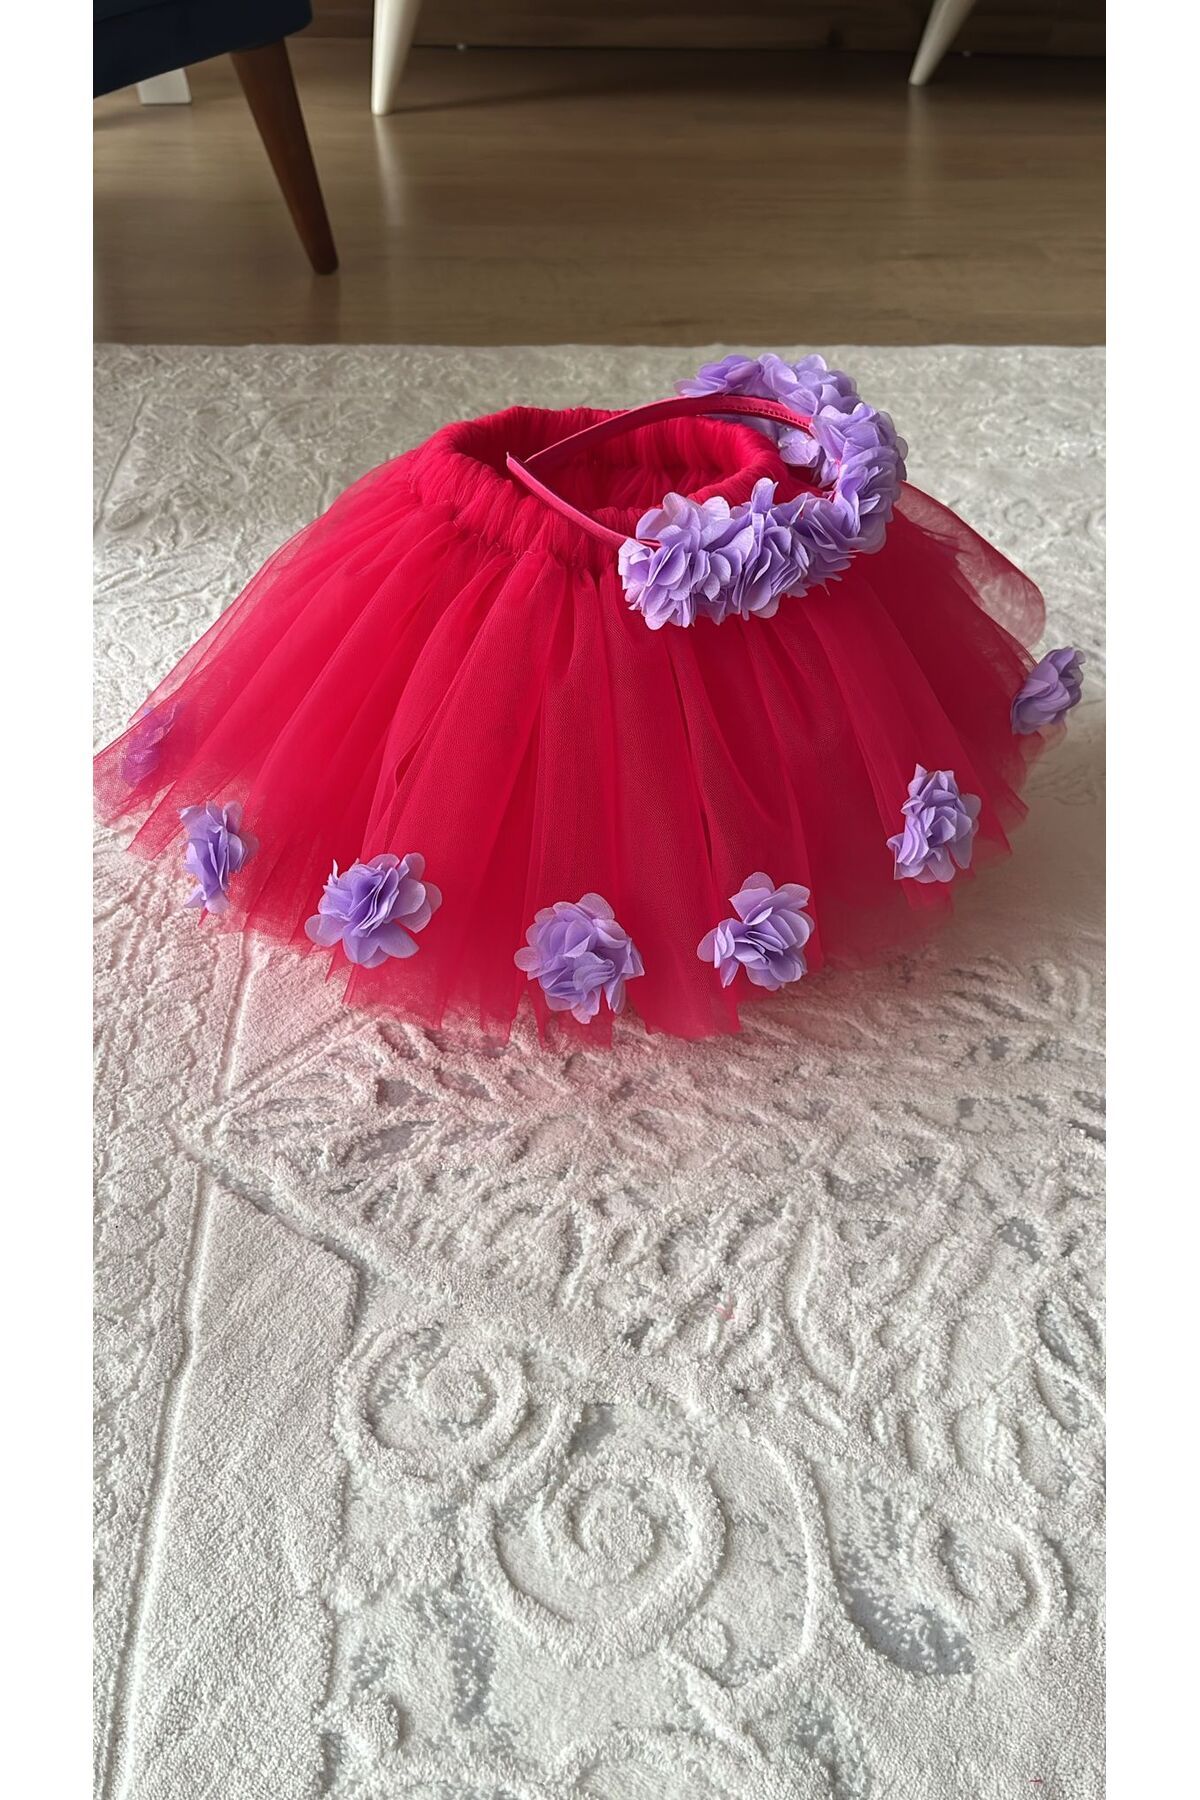 Sare Çocuk Giyim Lila Çiçek Detaylı Fuşya Tütü Etek ve Toka Takımı